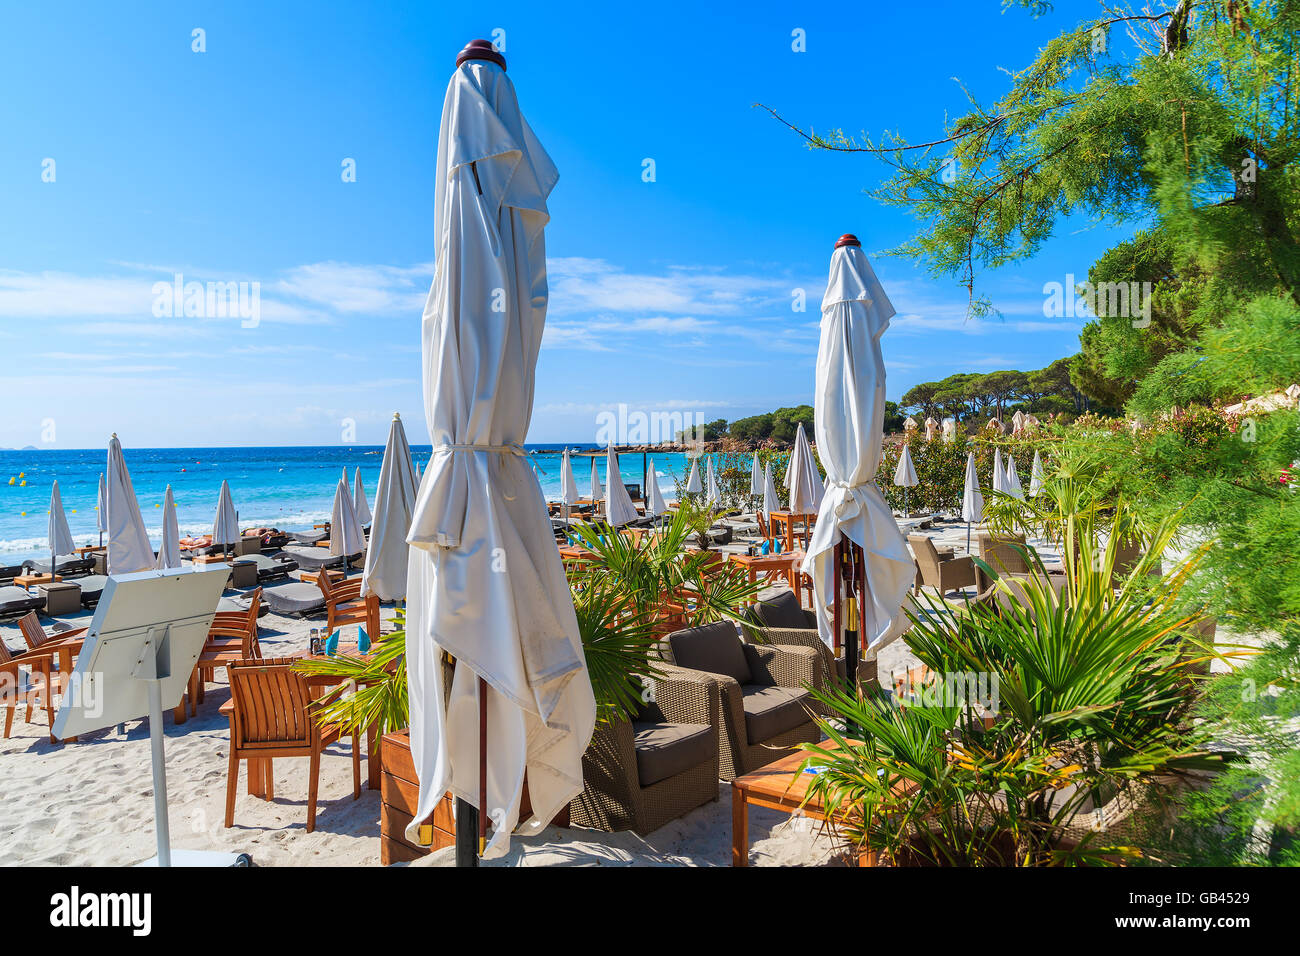 La spiaggia di Palombaggia, CORSICA - giu 24, 2015: Ombrelloni con lettini  e cafe bar tabelle sulla spiaggia di Palombaggia, Corsica islan Foto stock  - Alamy